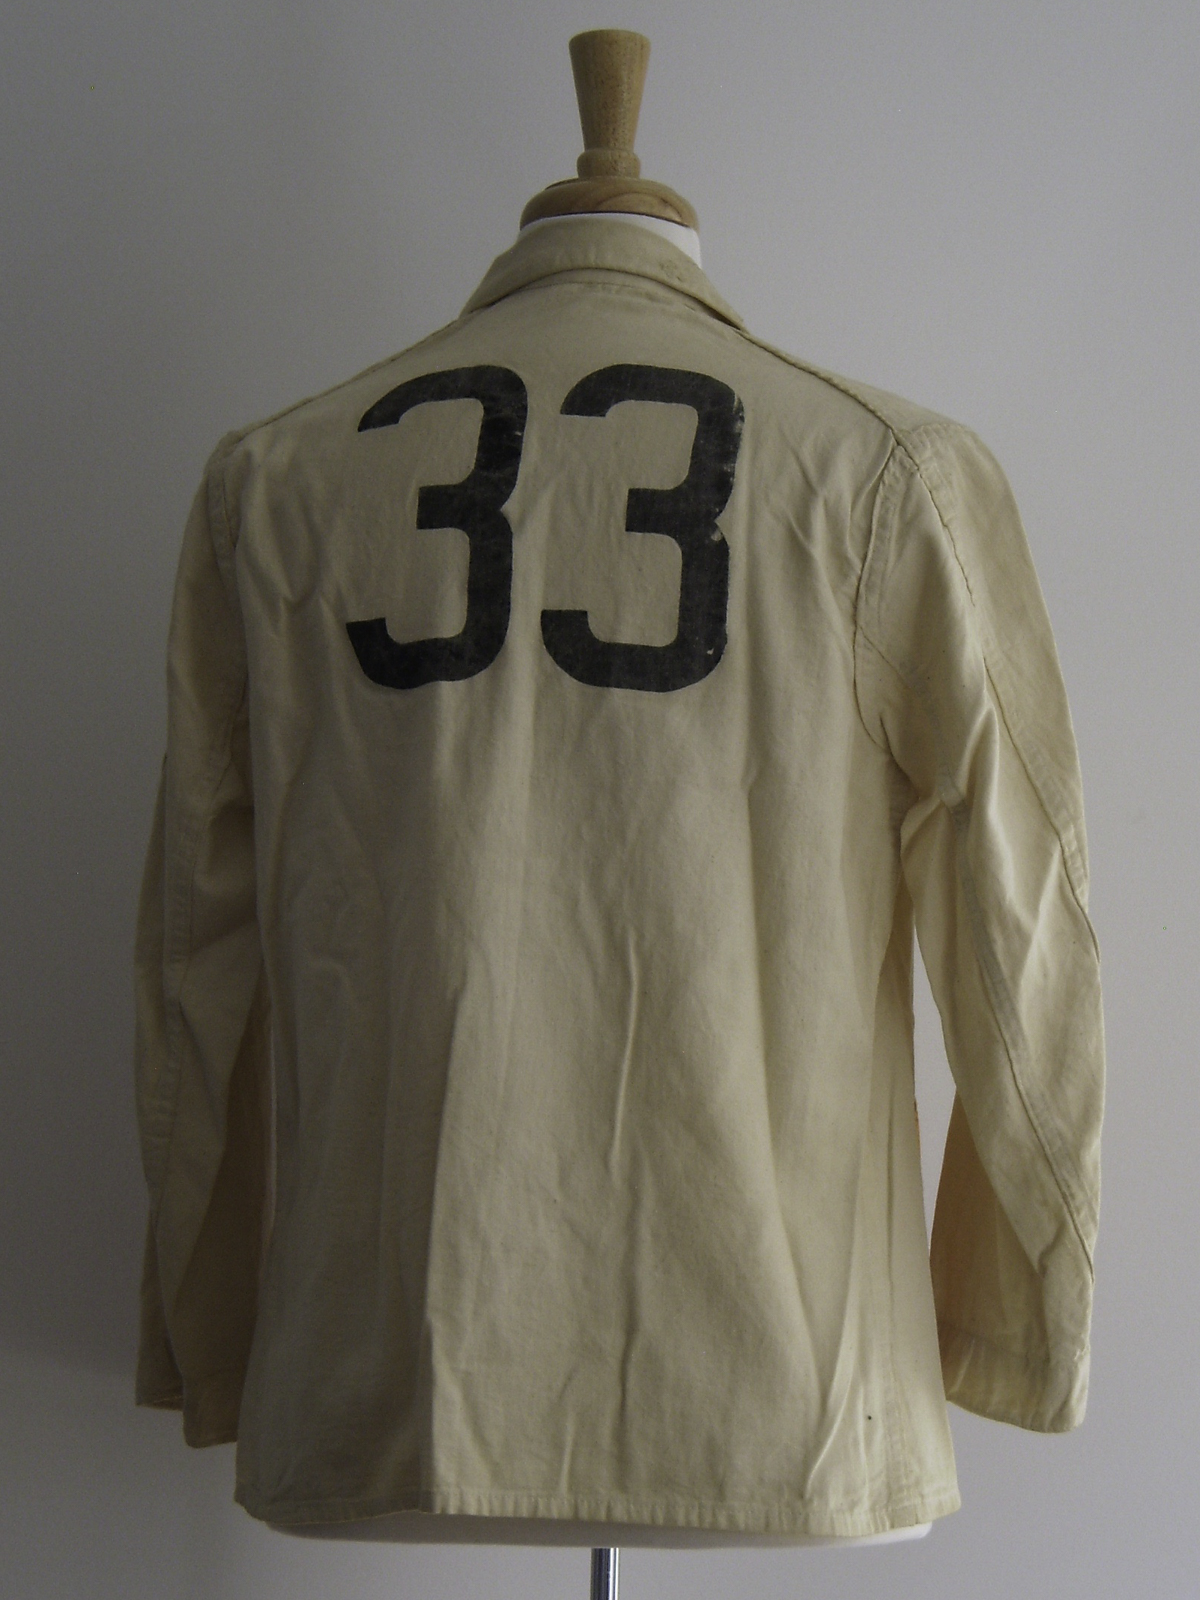 Reunion Jacket 1933 Variation 3 Rear